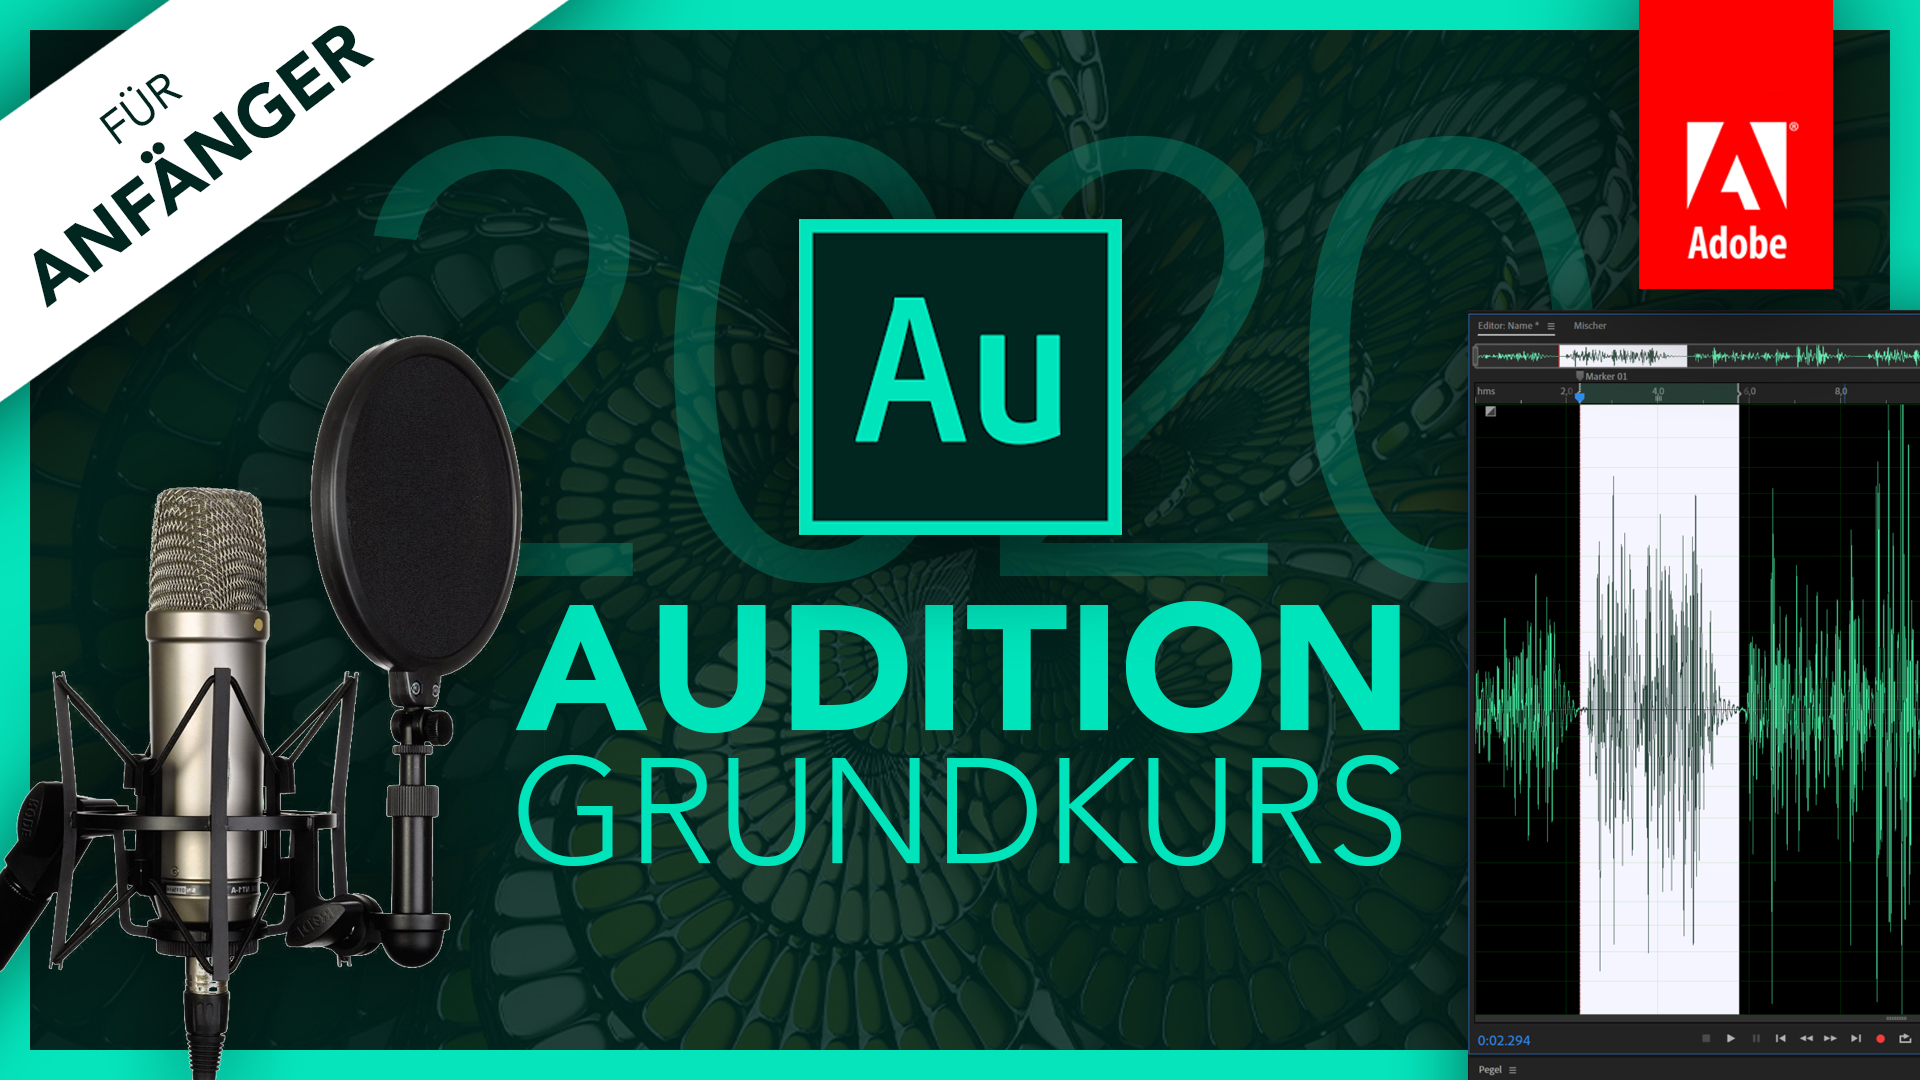 Adobe Audition 2020 (Grundkurs für Anfänger) Deutsch